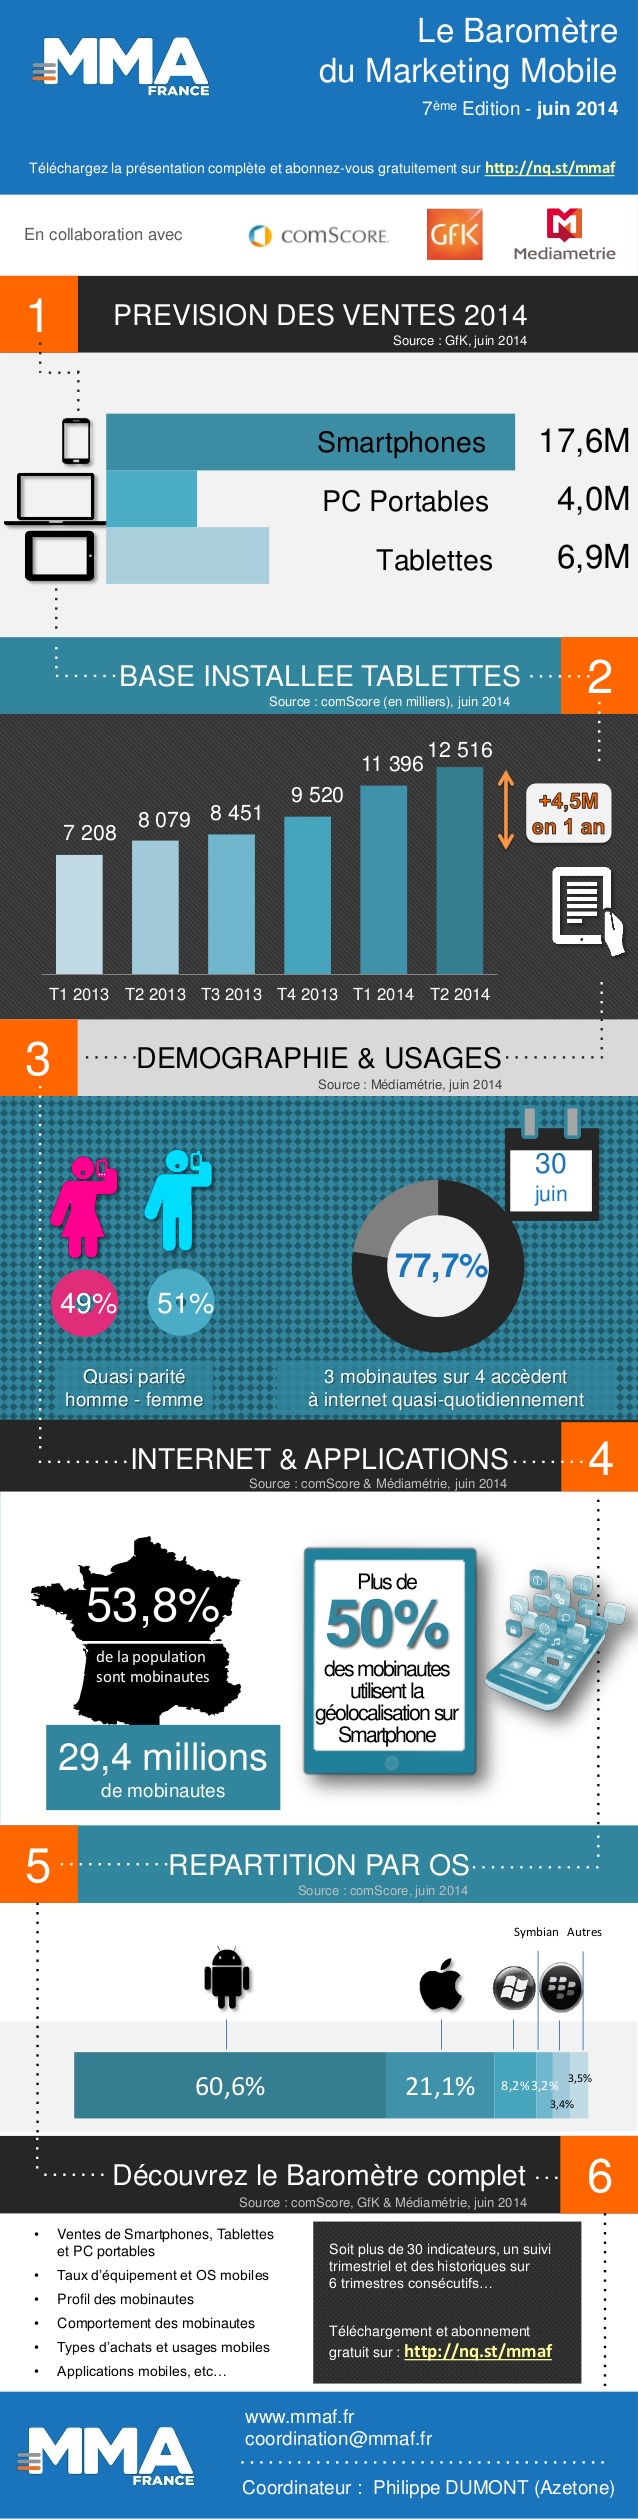 Barometre-Mobile-Marketing-Association-France-Infographie-T2-2014